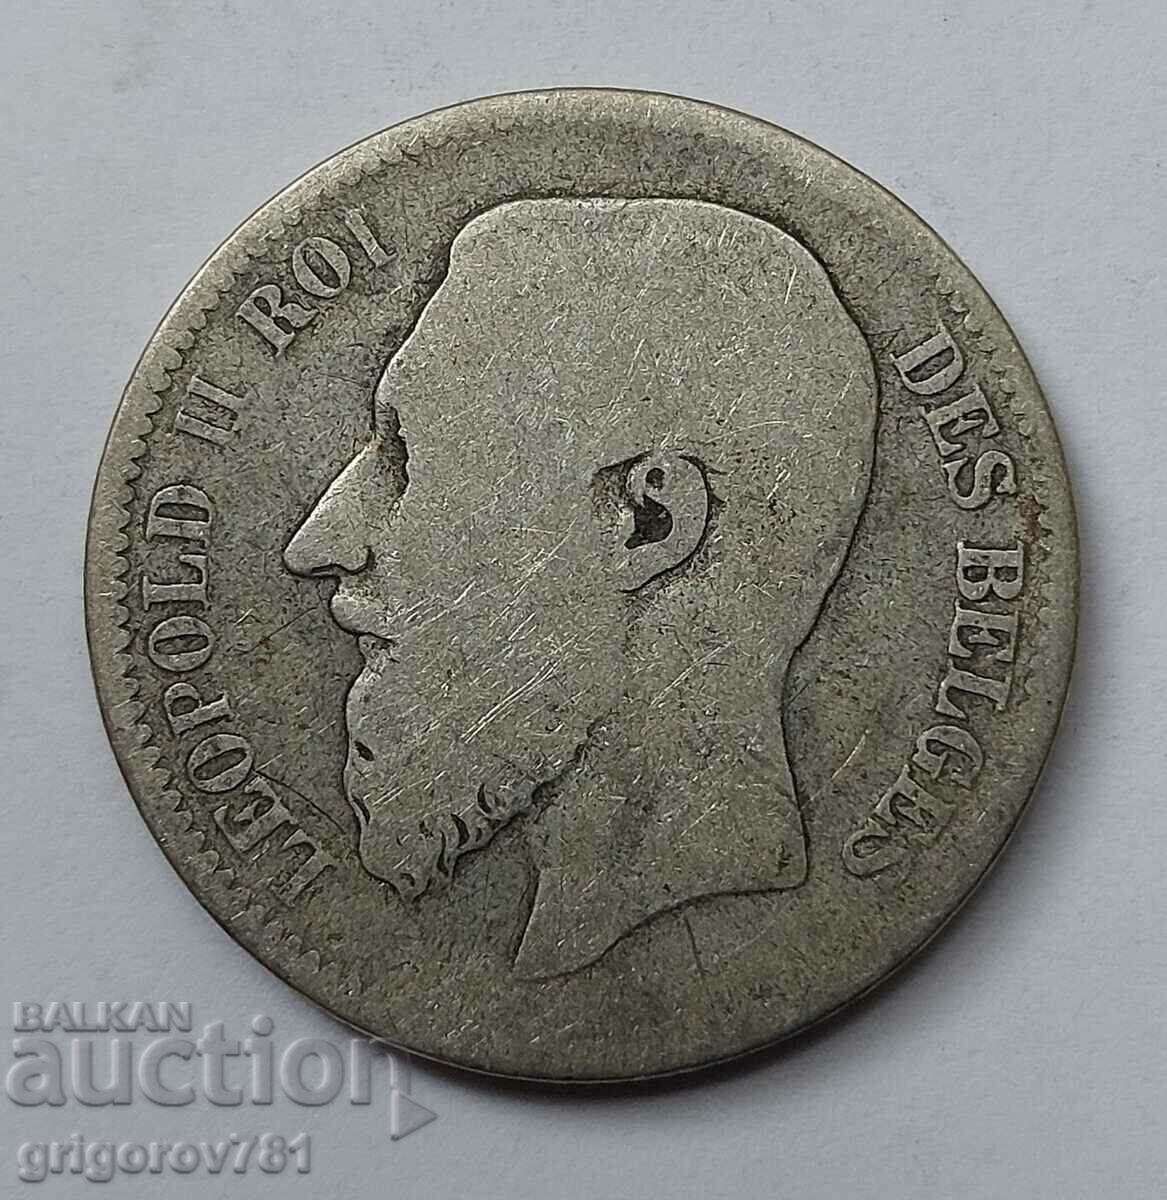 Ασημένιο 2 Φράγκα Βέλγιο 1866 - Ασημένιο νόμισμα #160